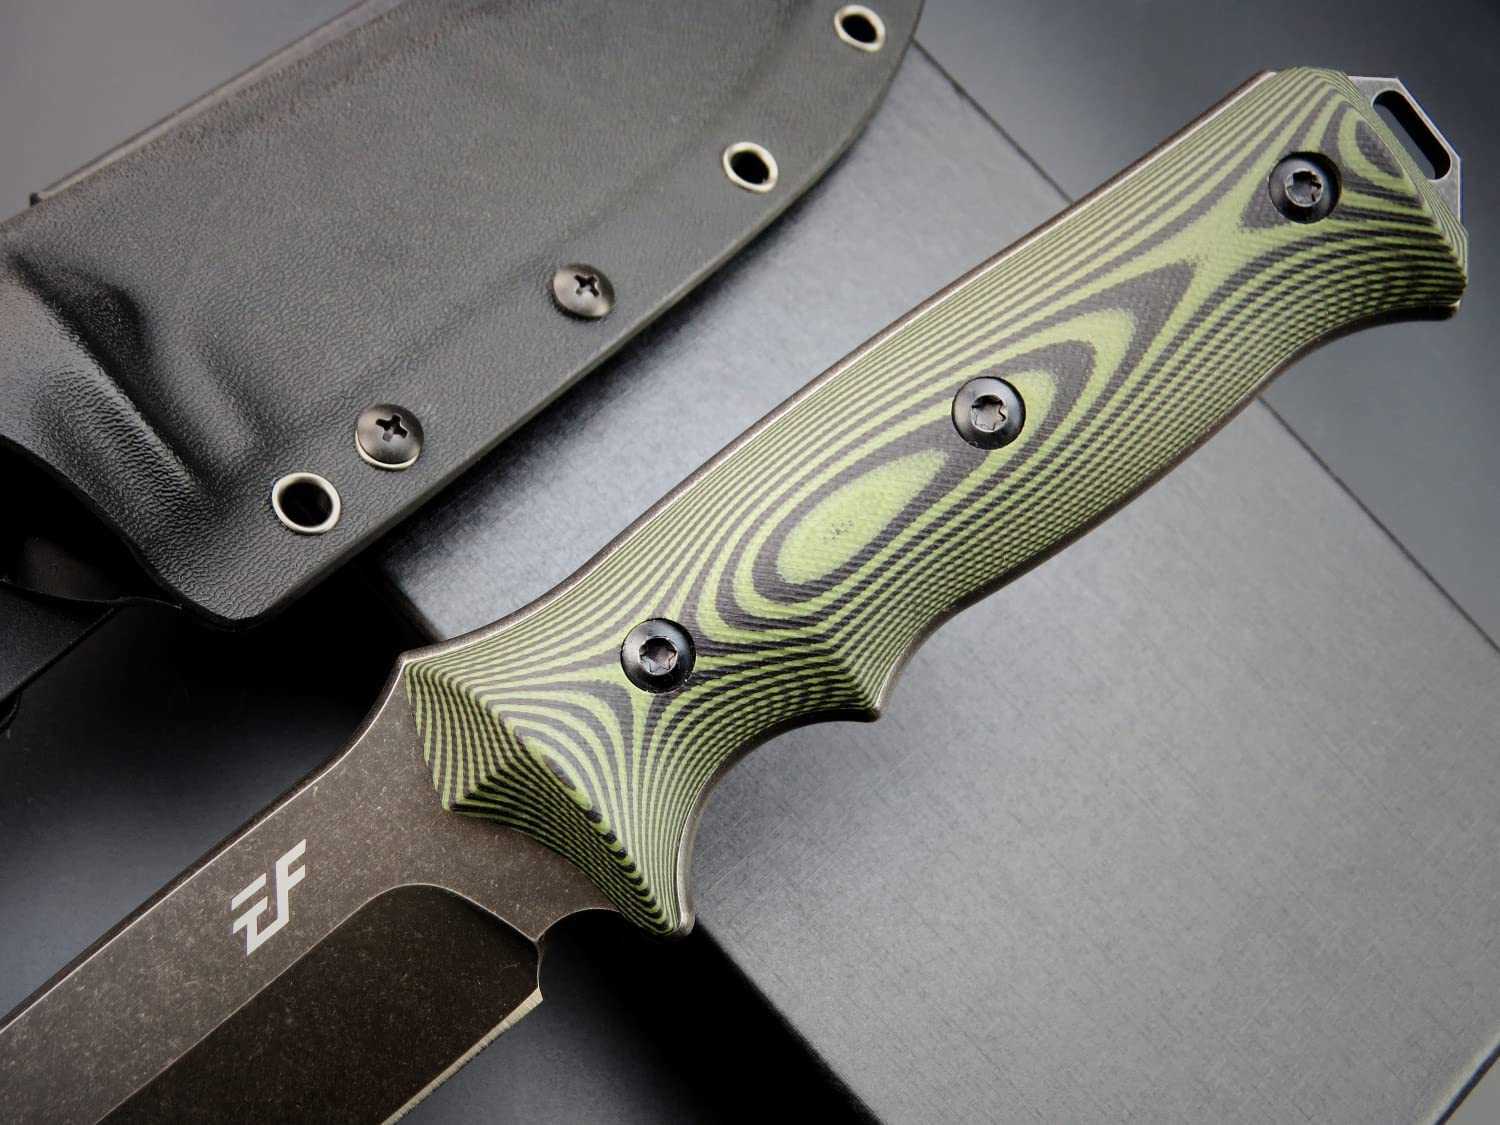 Couteaux de chasse de camping Eafengrow EF128 couteau à lame fixe lame en acier DC53 deux tons manche G10 couteaux fixes pleine soie couteau droit pour la chasse CampingHKD230626